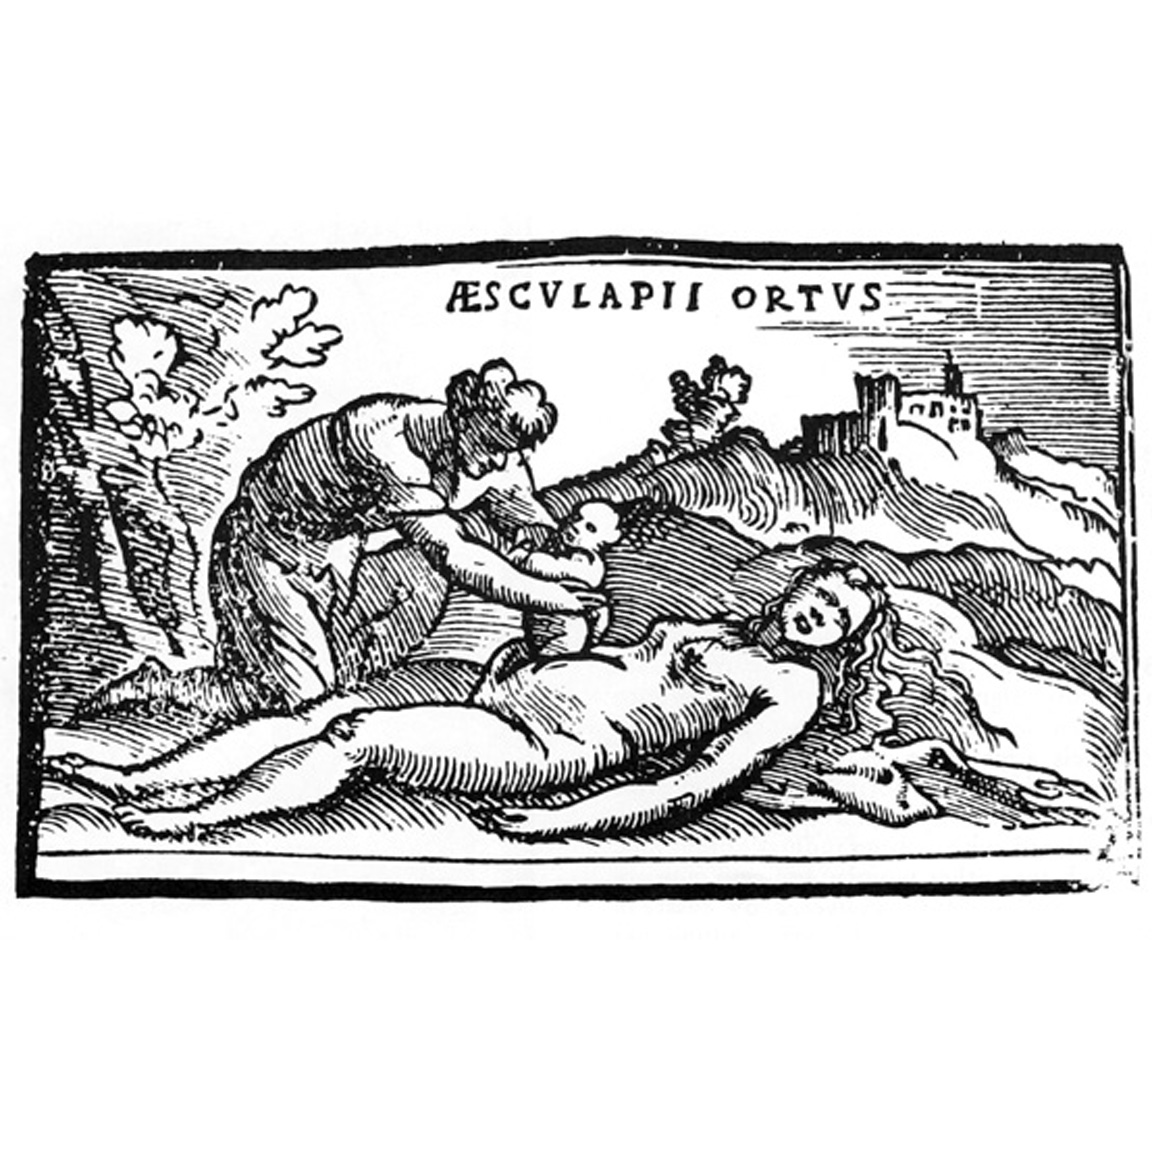 1549 BENEDETTI Cesarean Birth of Aeculapius